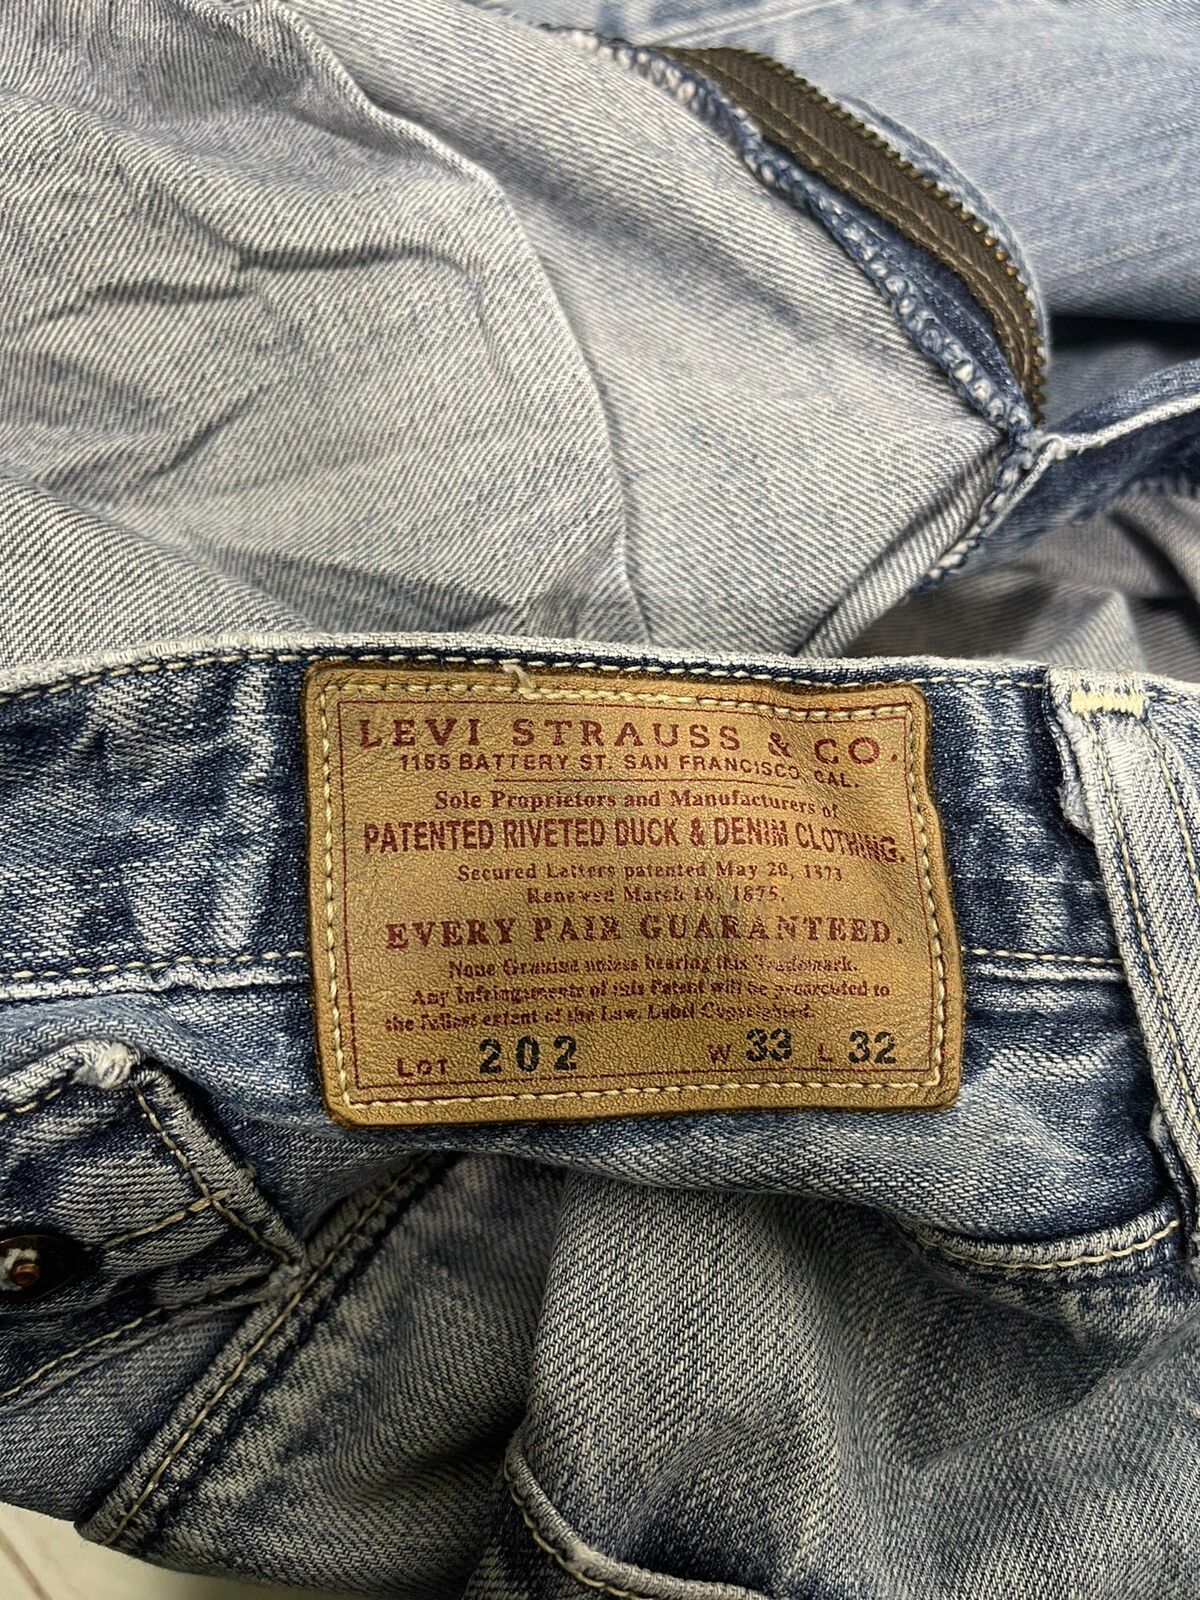 Vintage Levis Classic Lot 202 Jeans - 19